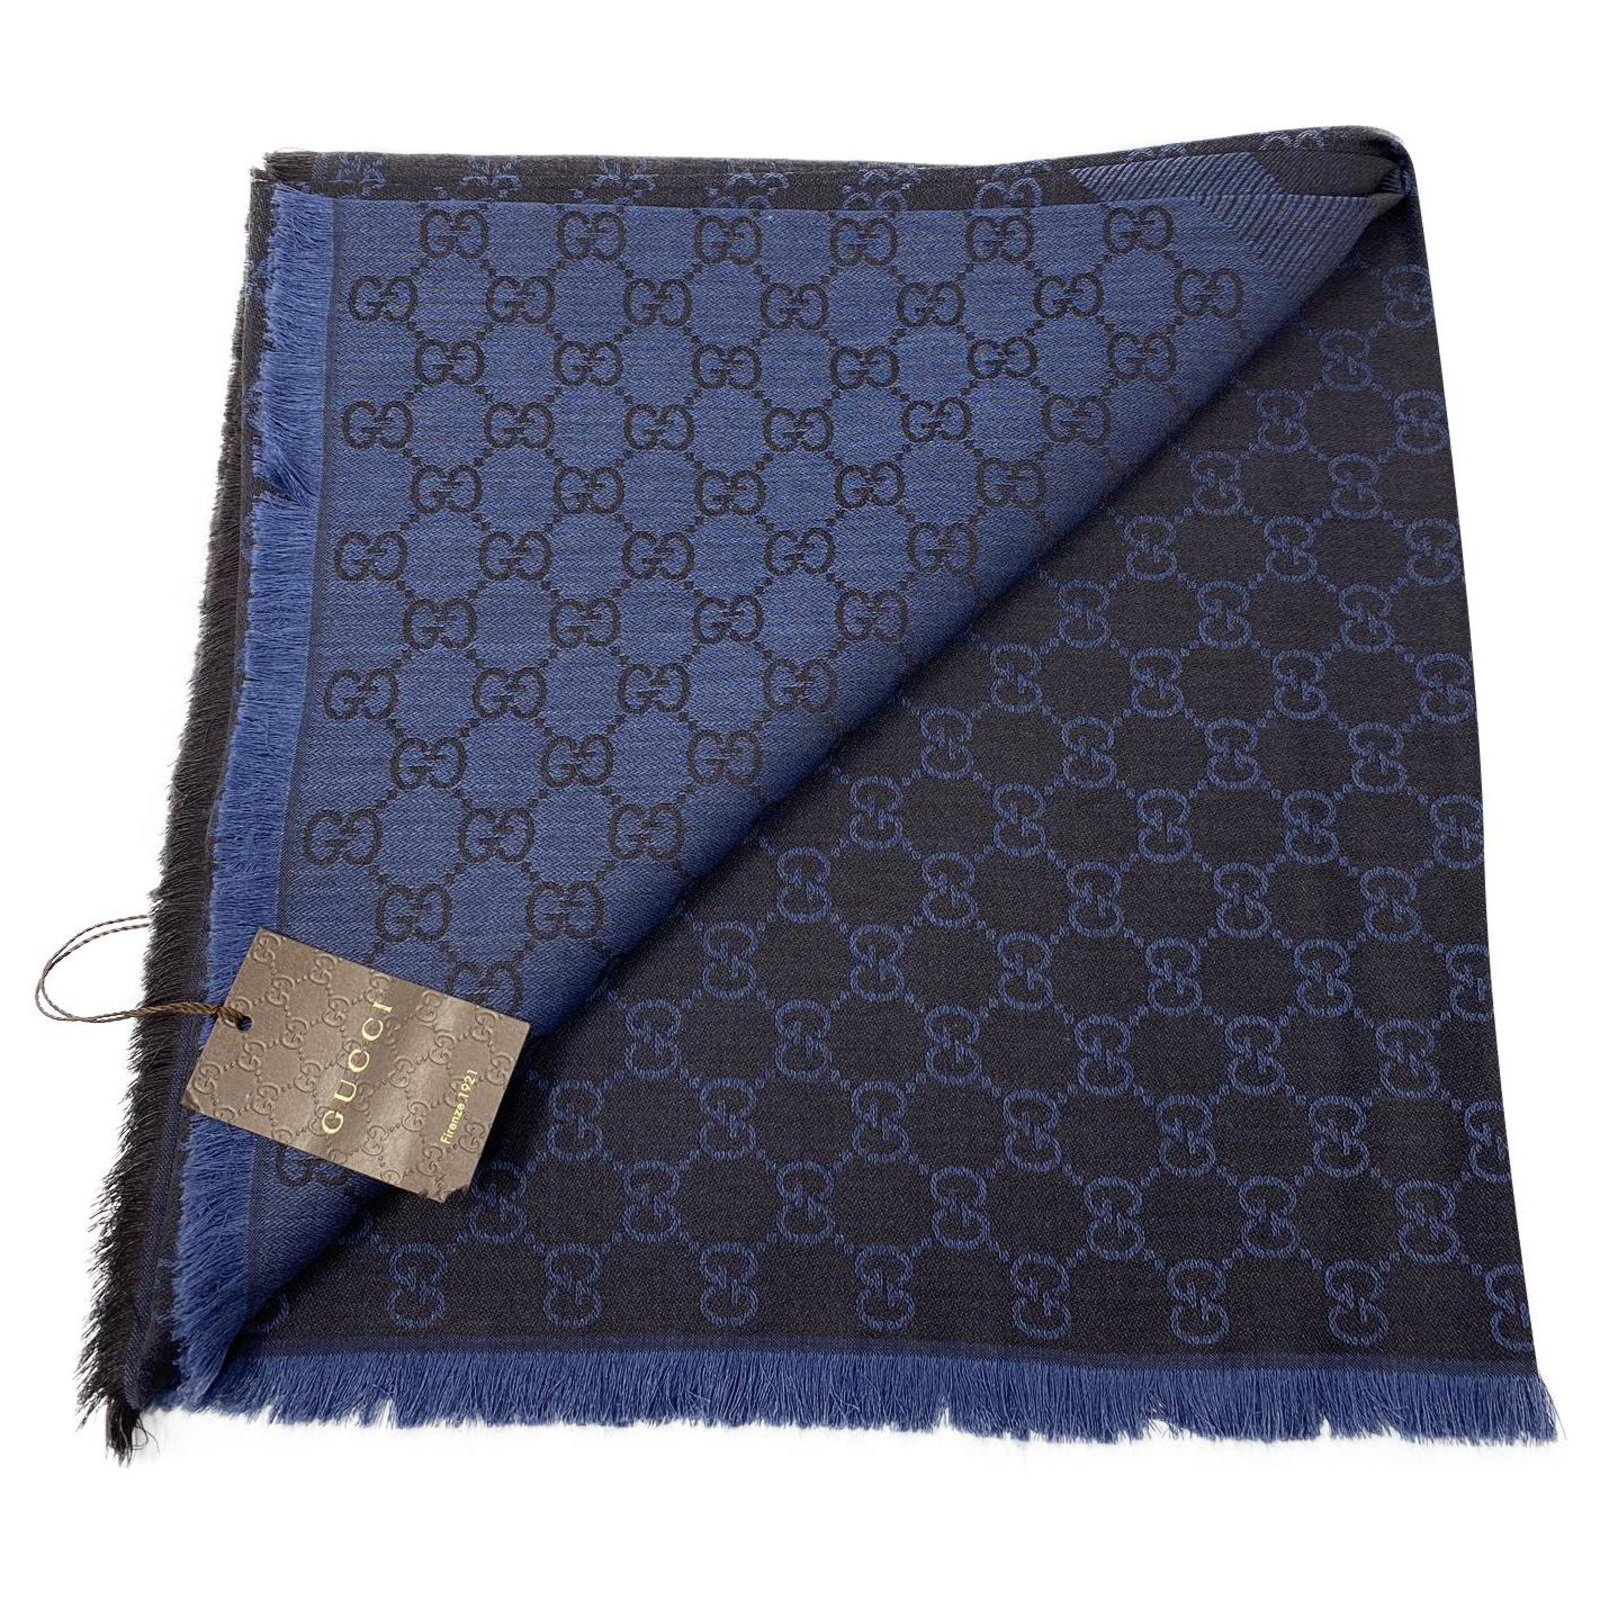 medarbejder svimmelhed elite gucci shawl scarf foulard new with paper bag